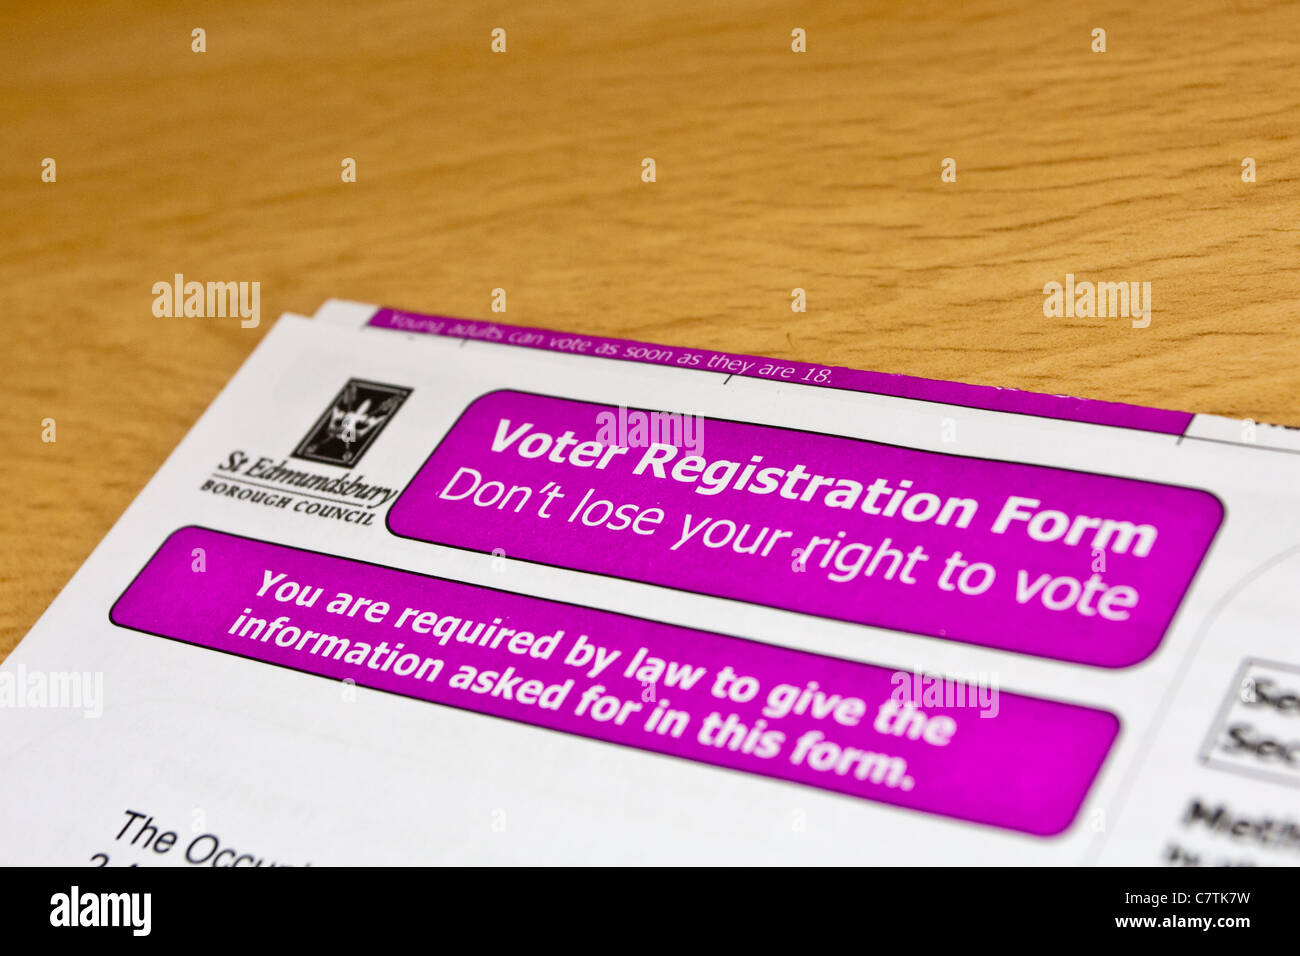 Voter registration form for the electoral register in Bury St Edmunds, UK Stock Photo